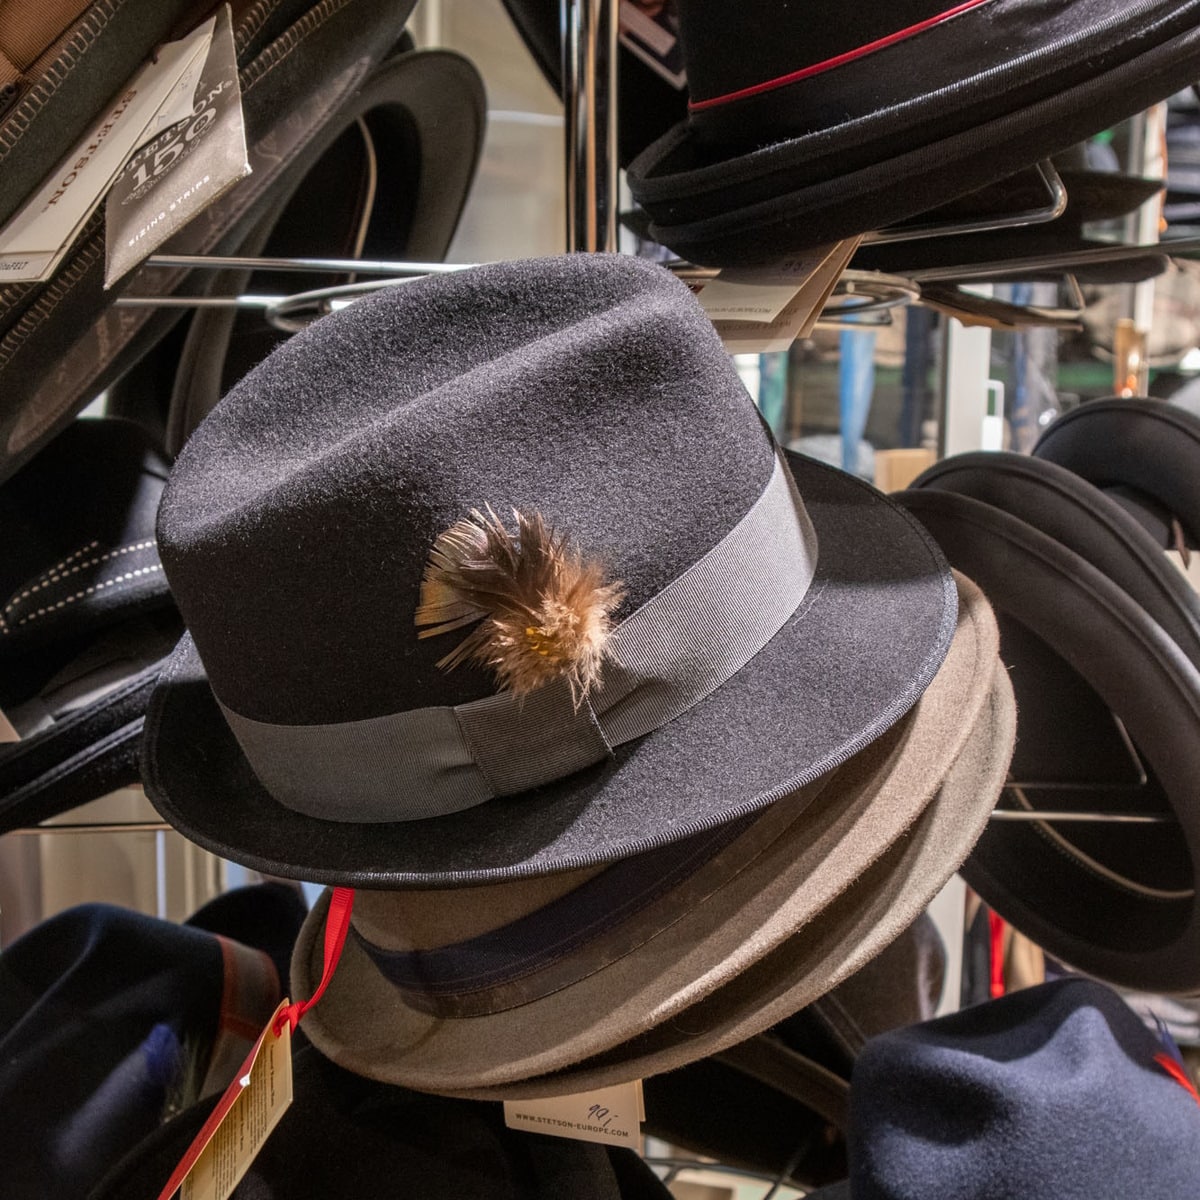 Straw Boater Hat Guide - Formal Summer Hats For Men